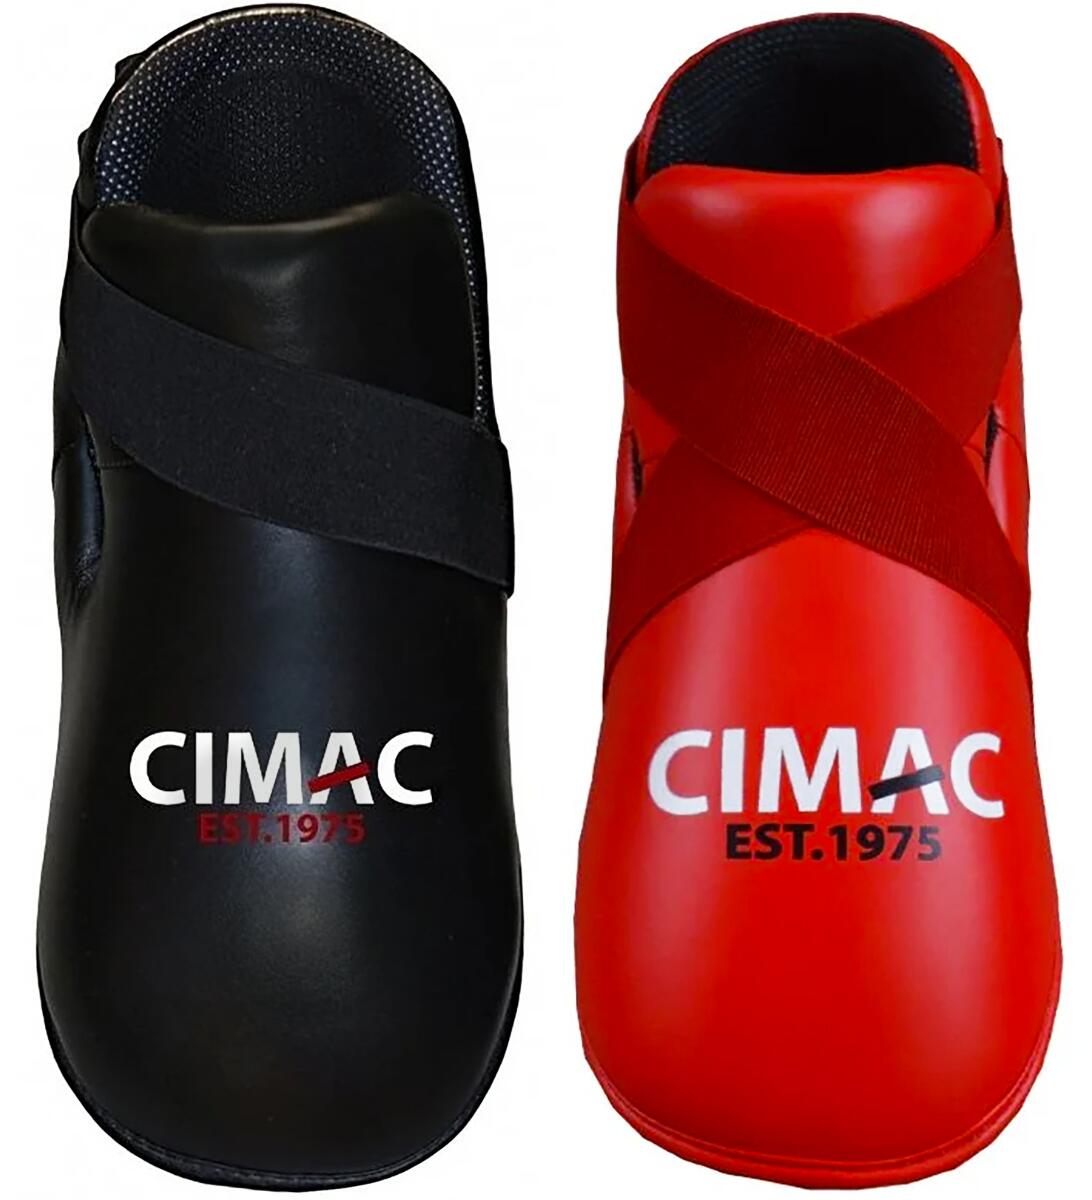 CIMAC Cimac Super Safety Kickboxing Foot Pads